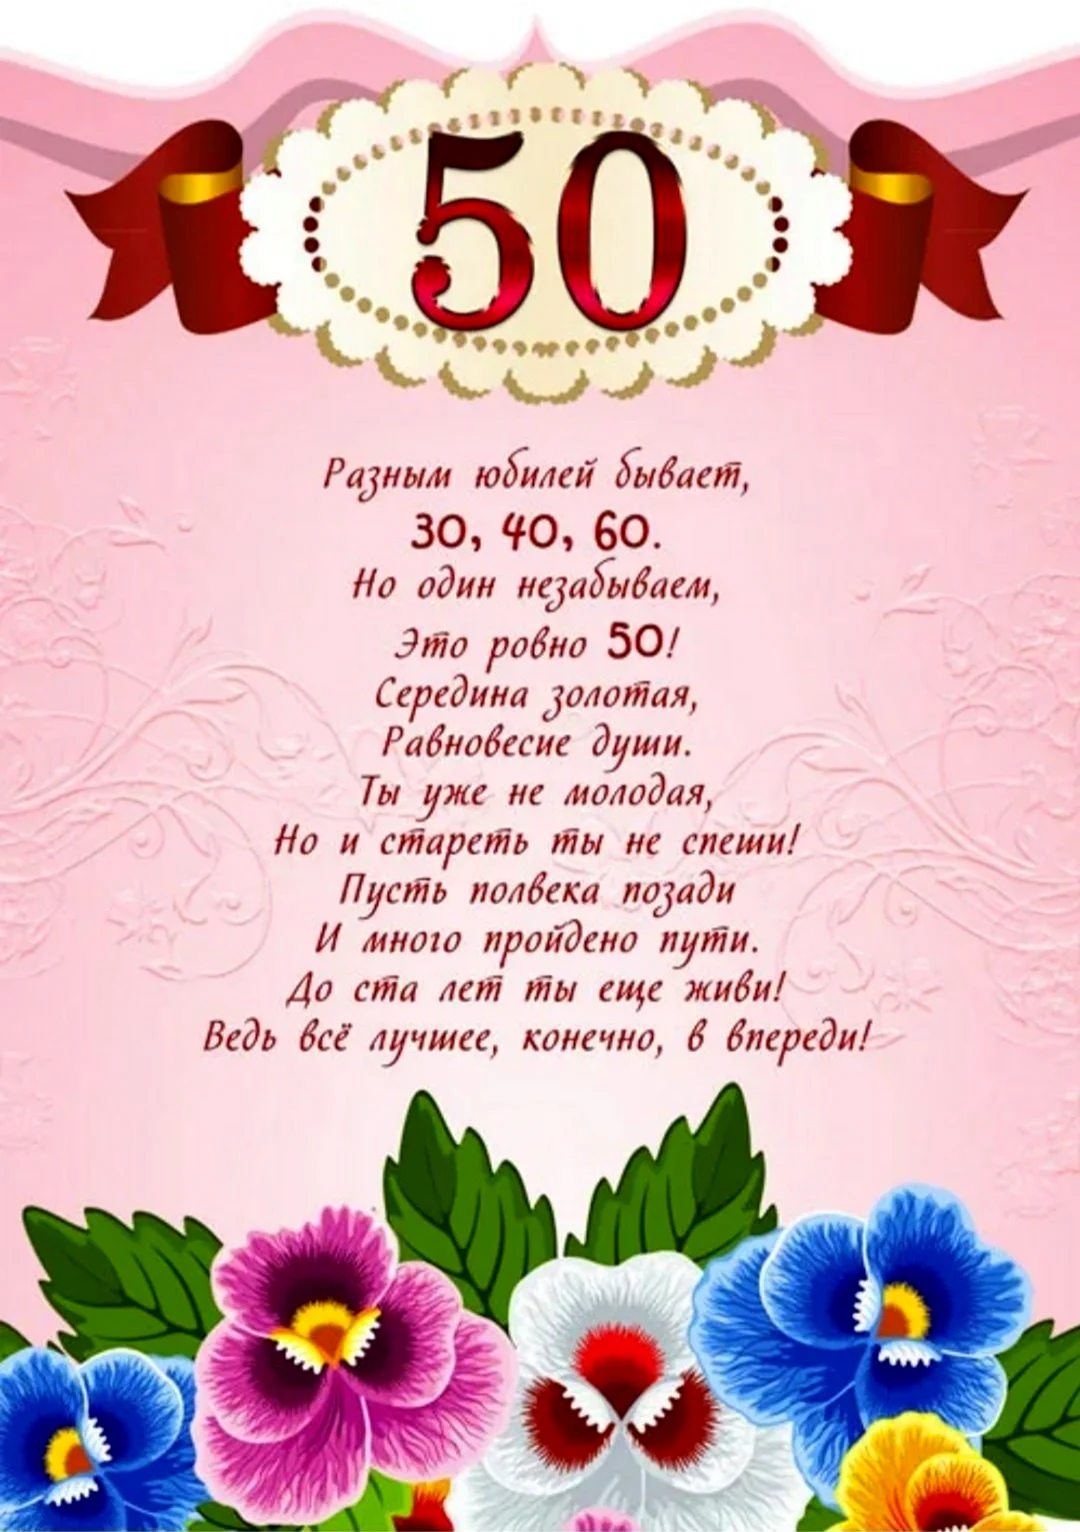 Поздравление с юбилеем 50 лет. Открытка с днем рождения